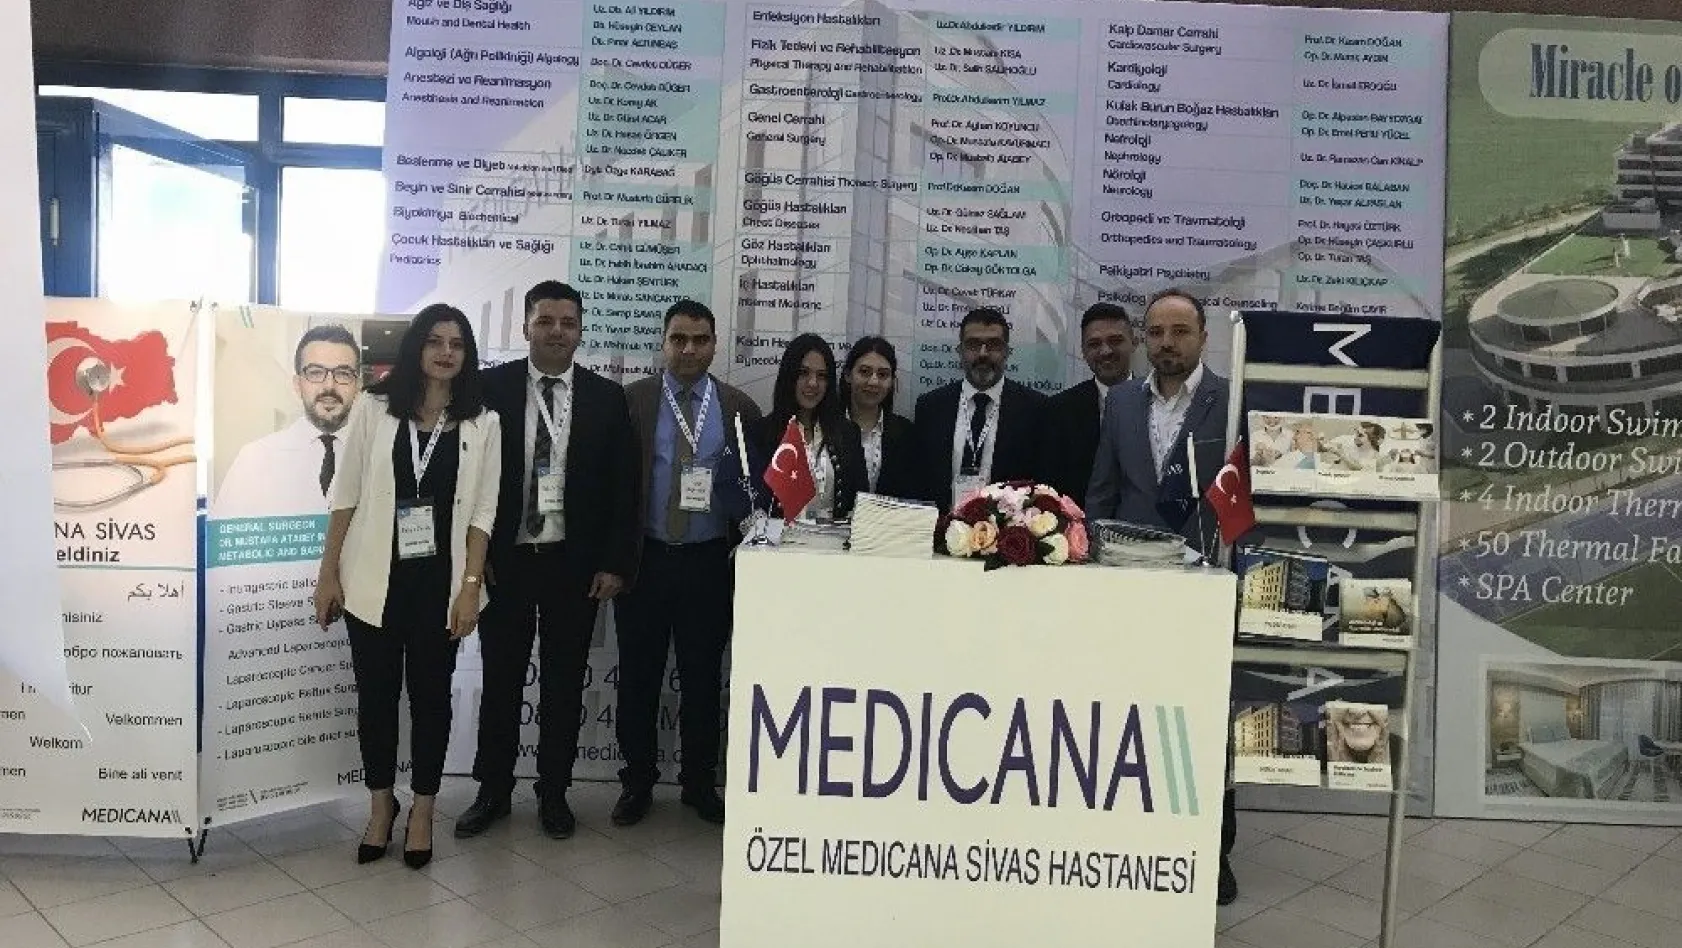 Medicana Sivas Hastanesi Termal ve Sağlık Turizm Zirvesi'ne katıldı
